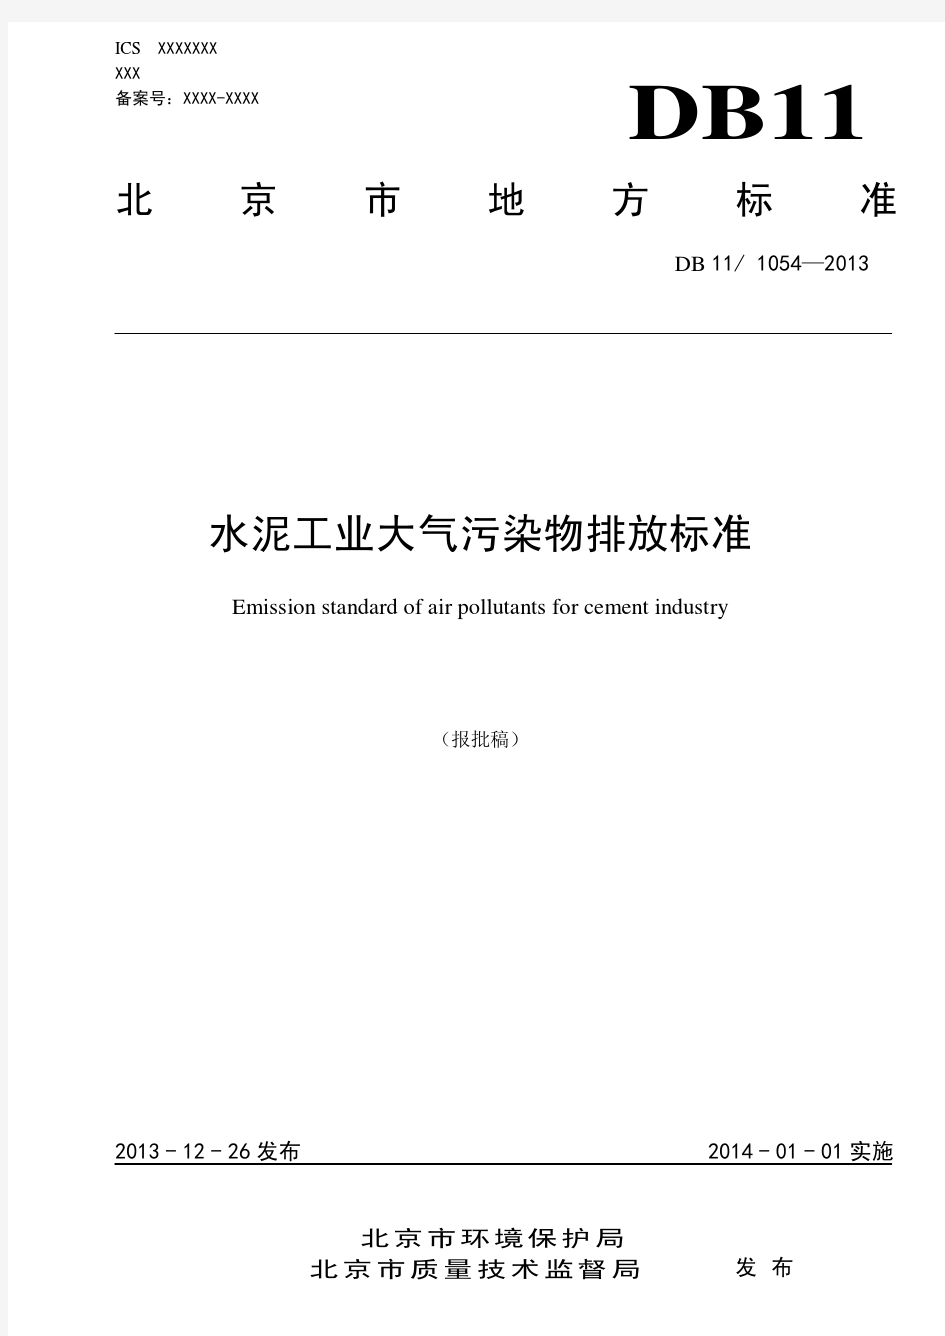 DB11-1054-2013水泥工业大气污染物排放标准》(北京地方)